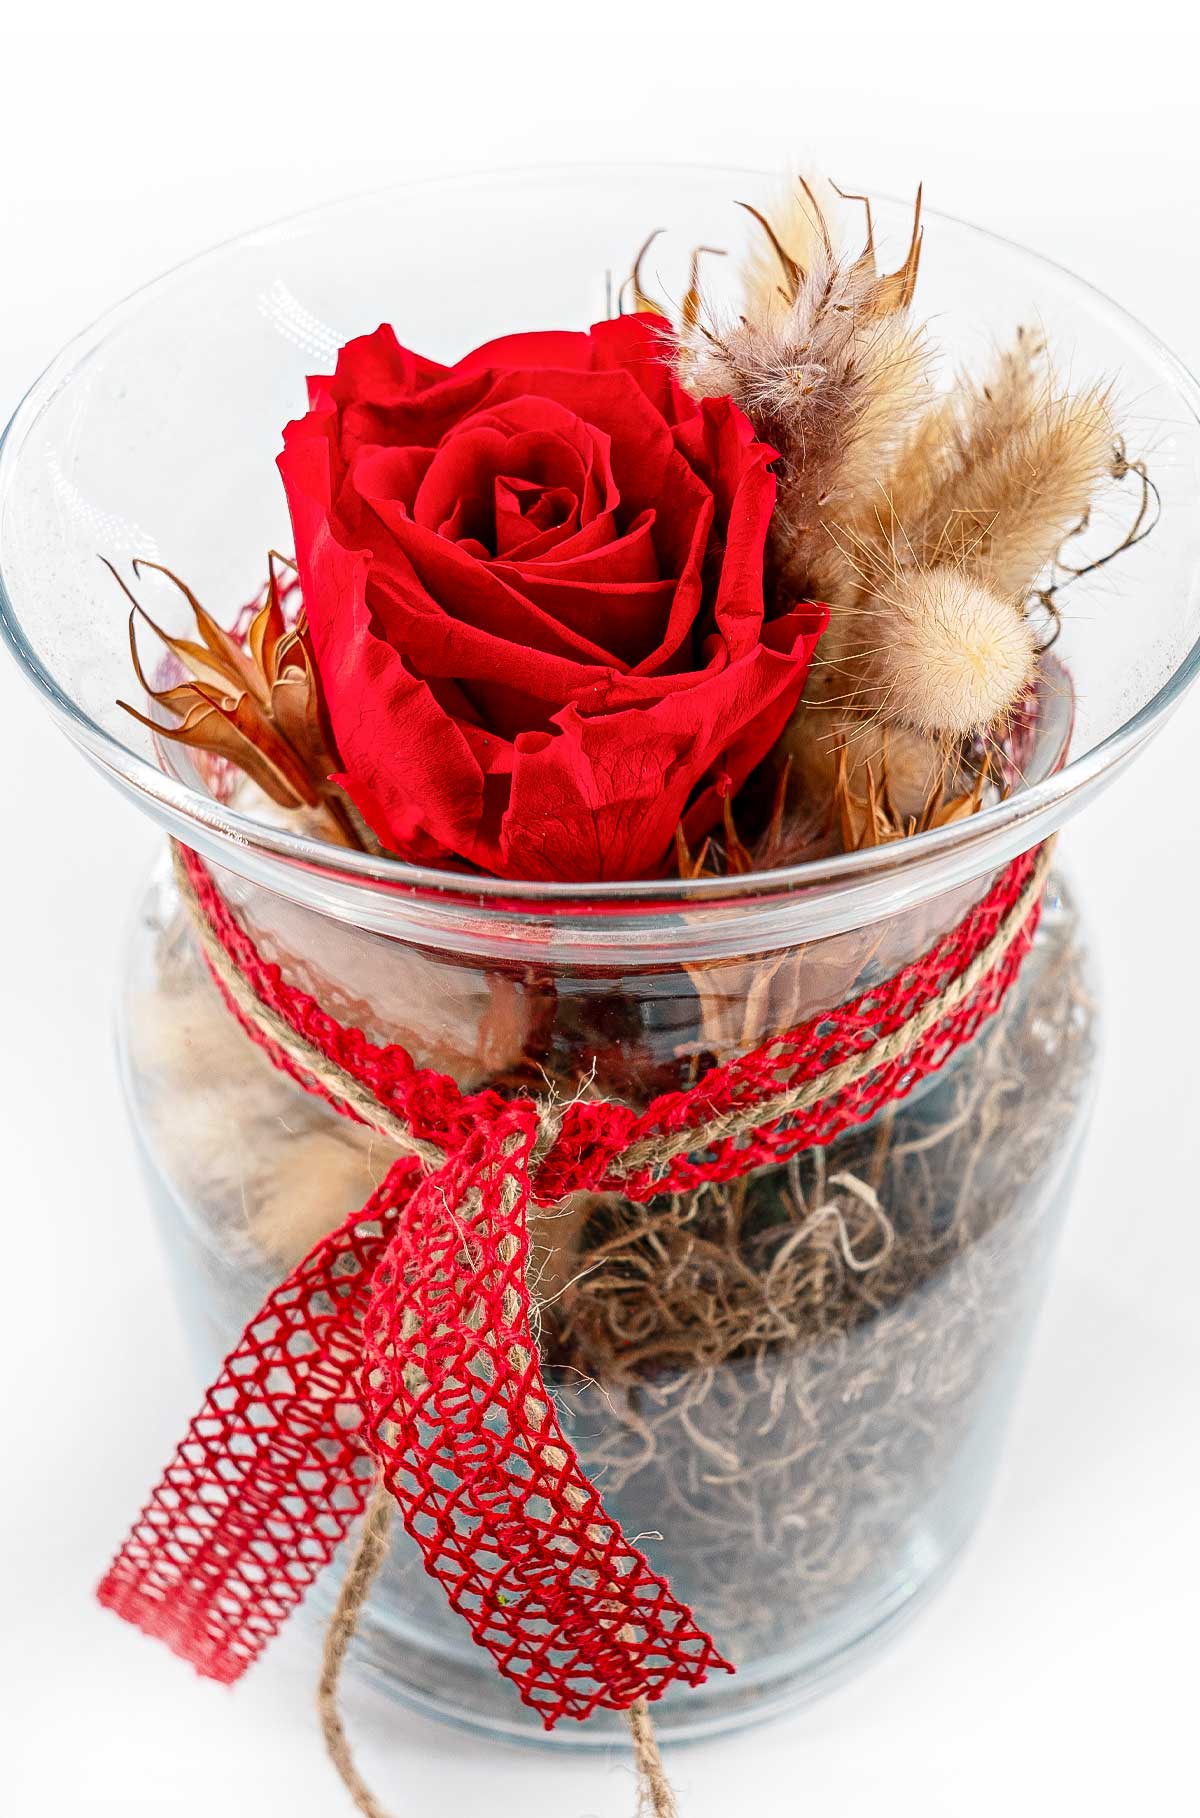 Exquisite, dauerhafte rote Rose im Glas – ideales Geschenk zum Muttertag und Hochzeitsdekoration